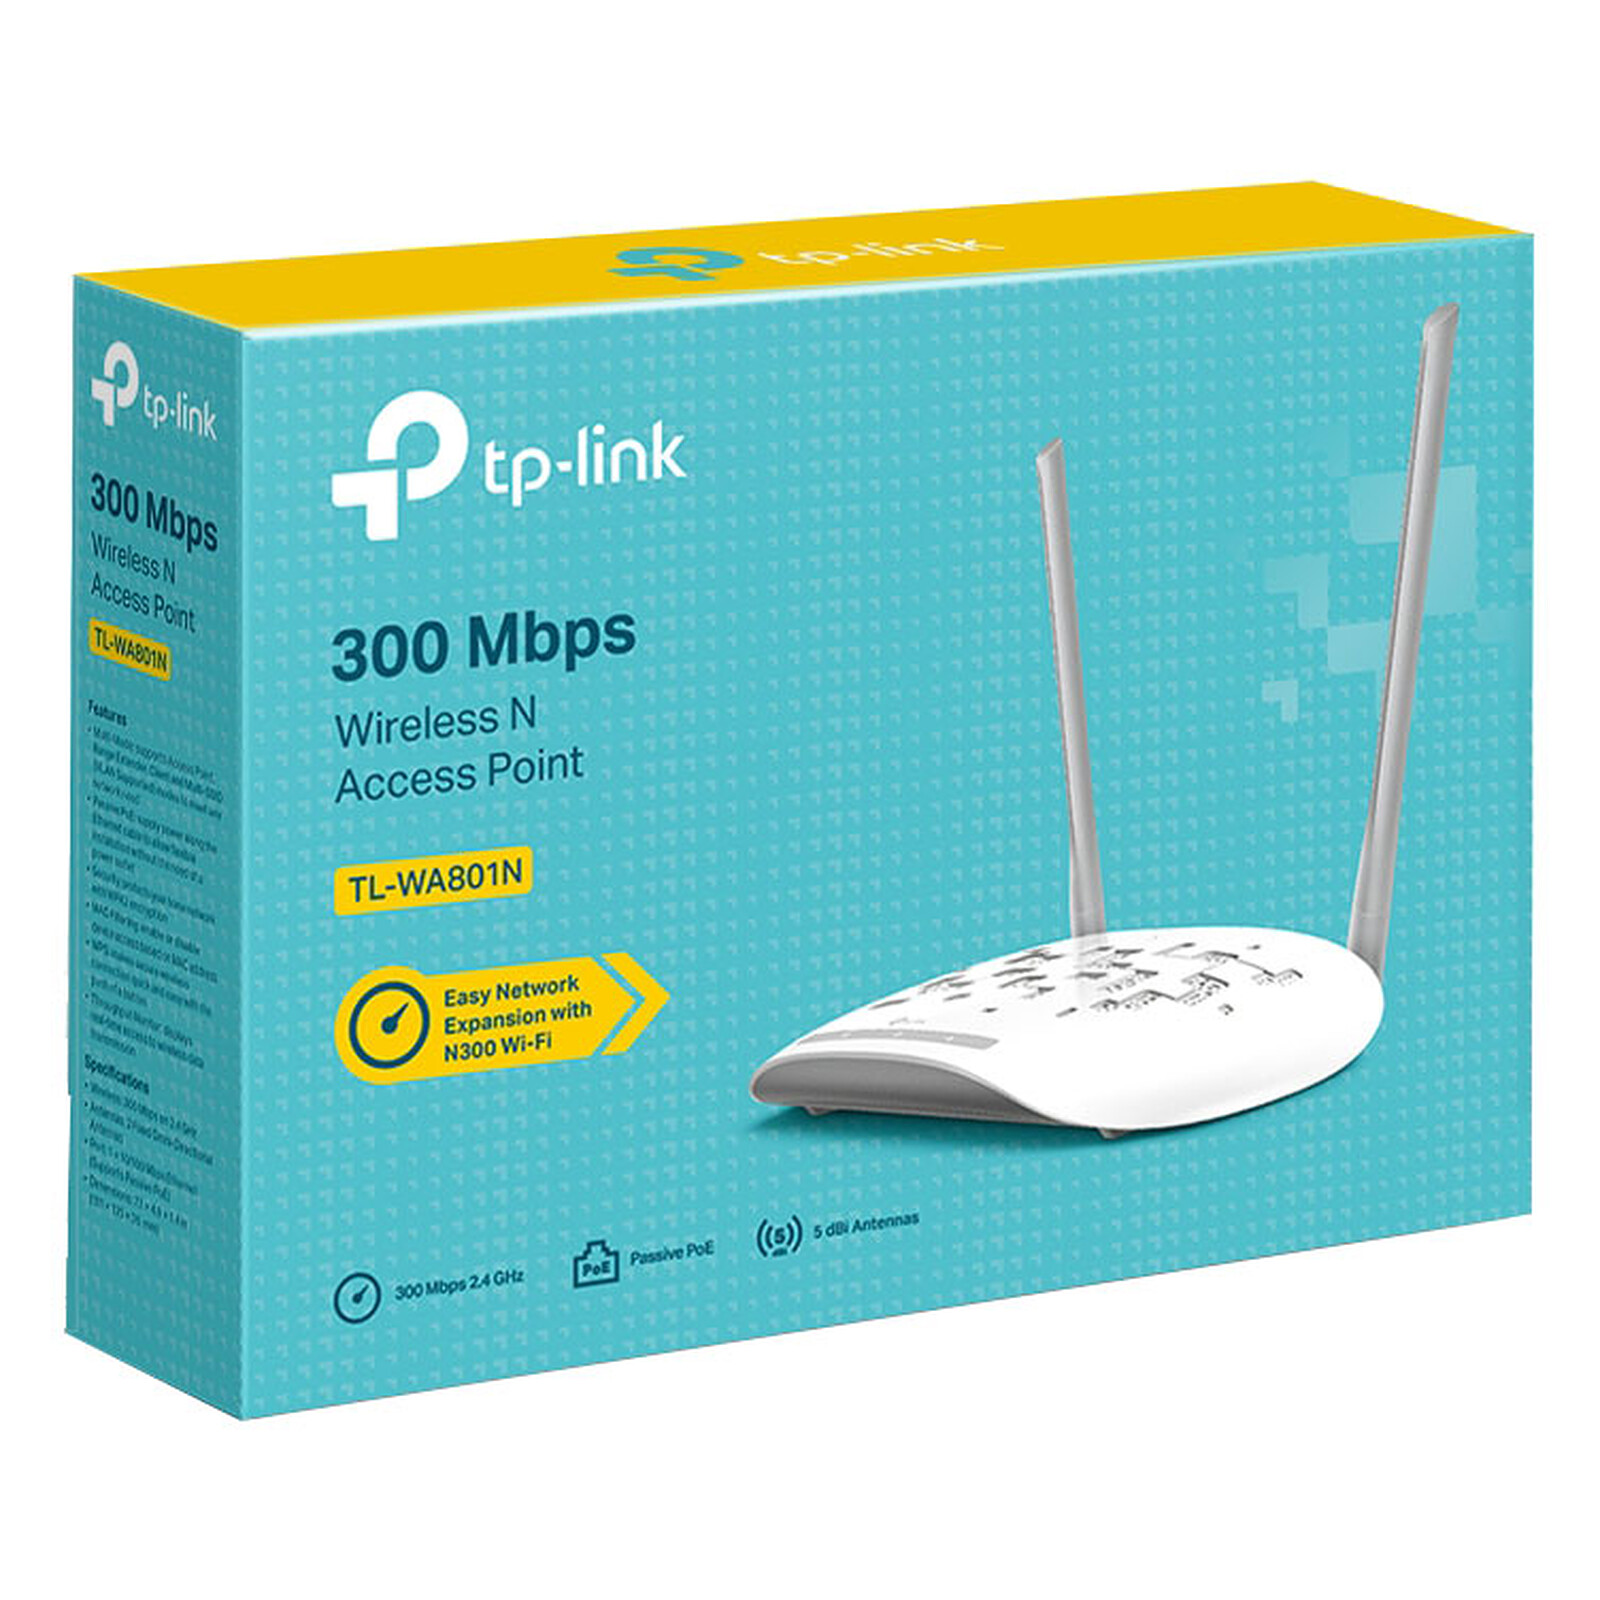 Répéteur Wifi TP-Link TL-WA865RE b/g/n 300Mbits 2 Antennes